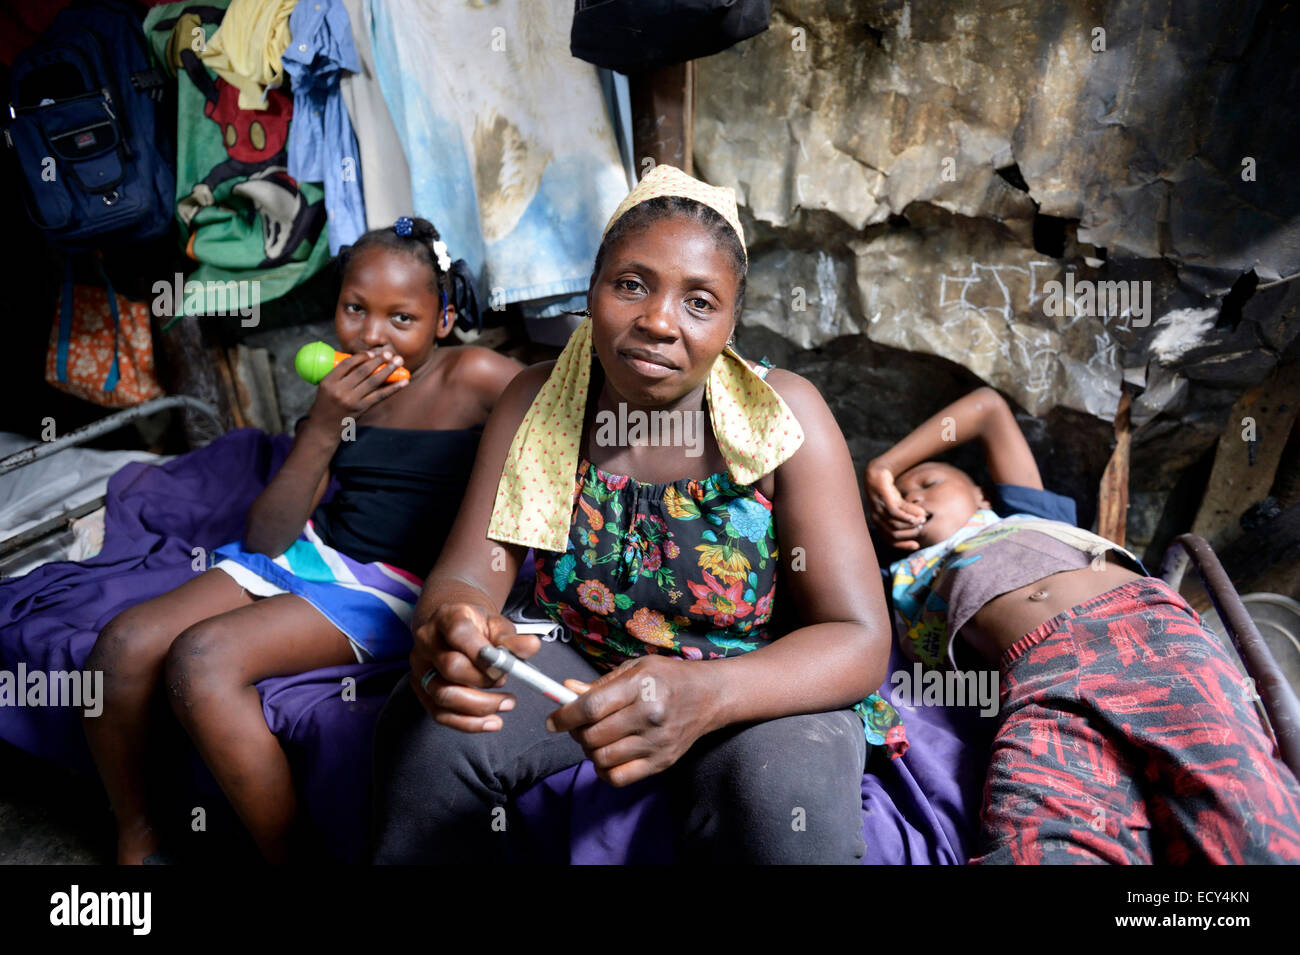 Femme, 40 ans, et deux enfants, 8 et 10 ans, à la caserne, le camp de réfugiés du séisme d'Icare, 5 ans après le 2010 Banque D'Images